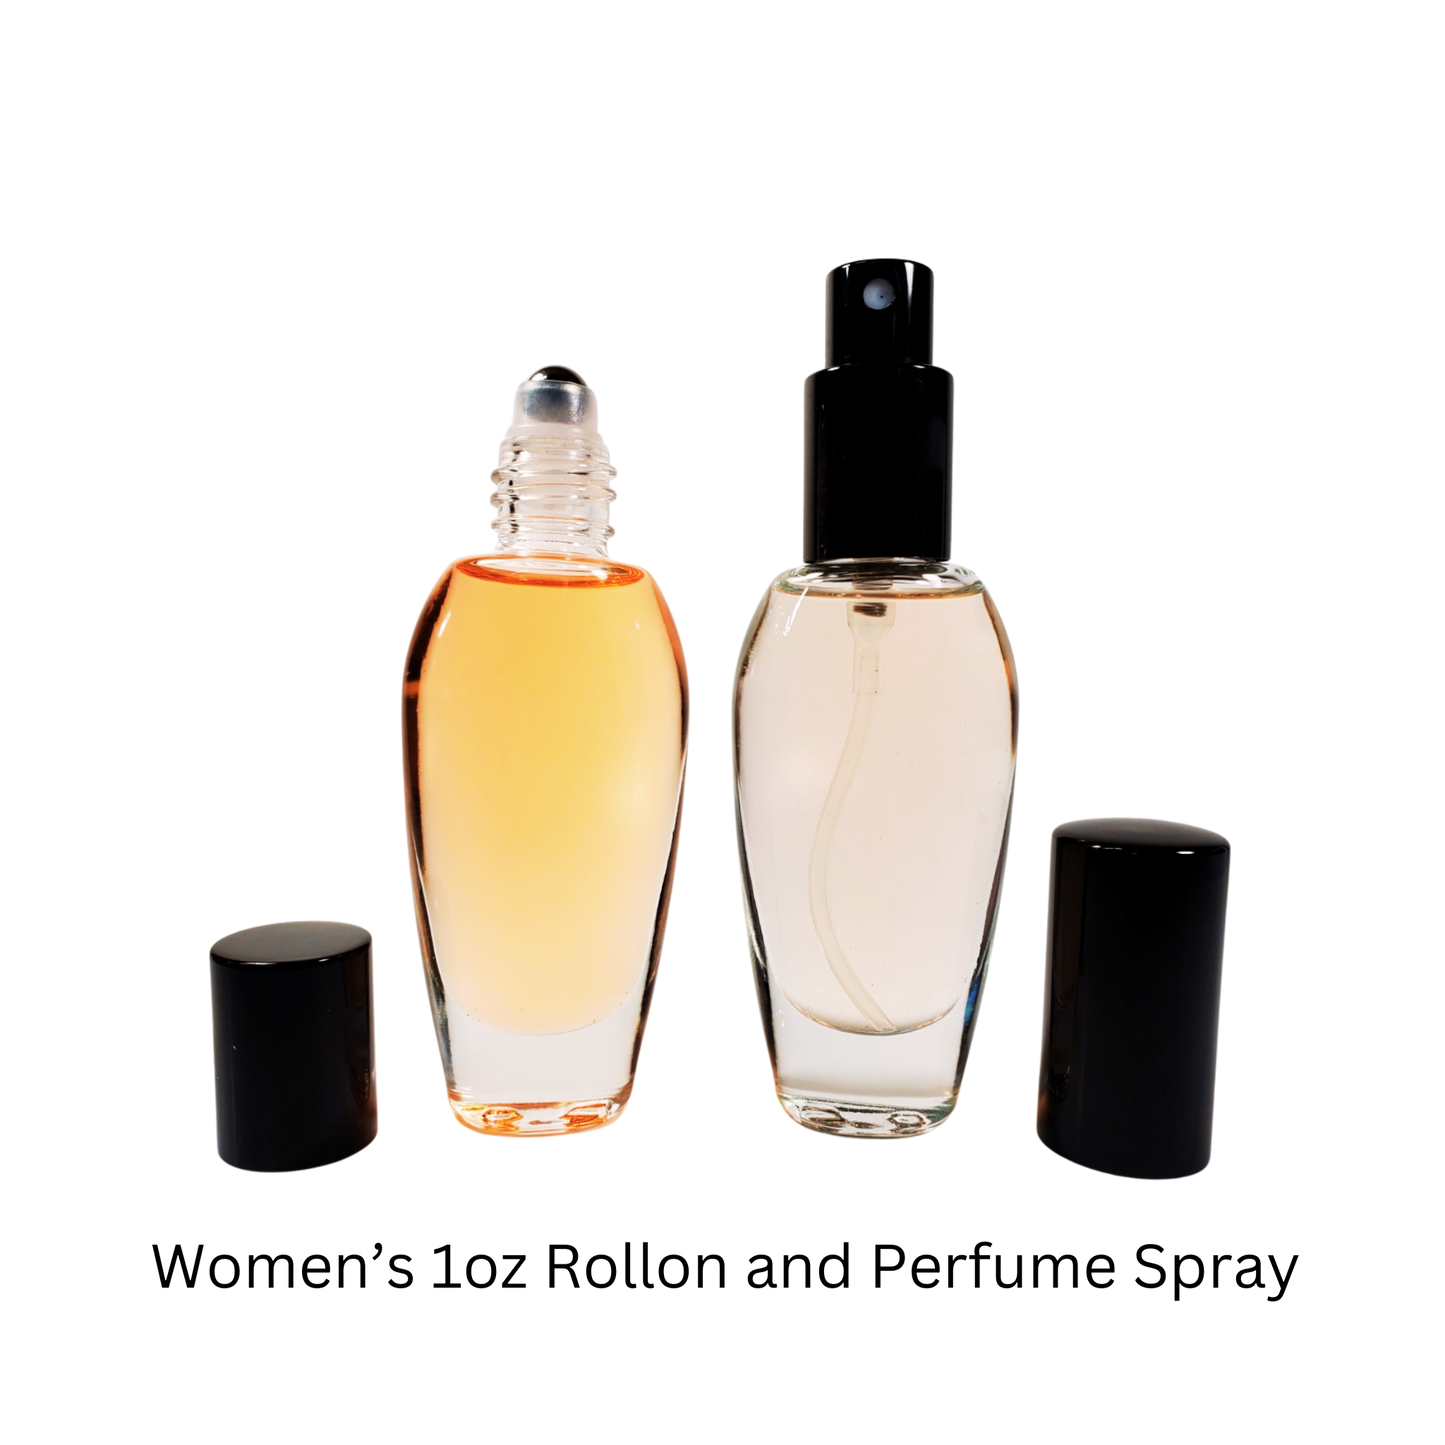 Black Orchid Type* / Perfume Body Oil / Eau de Parfum